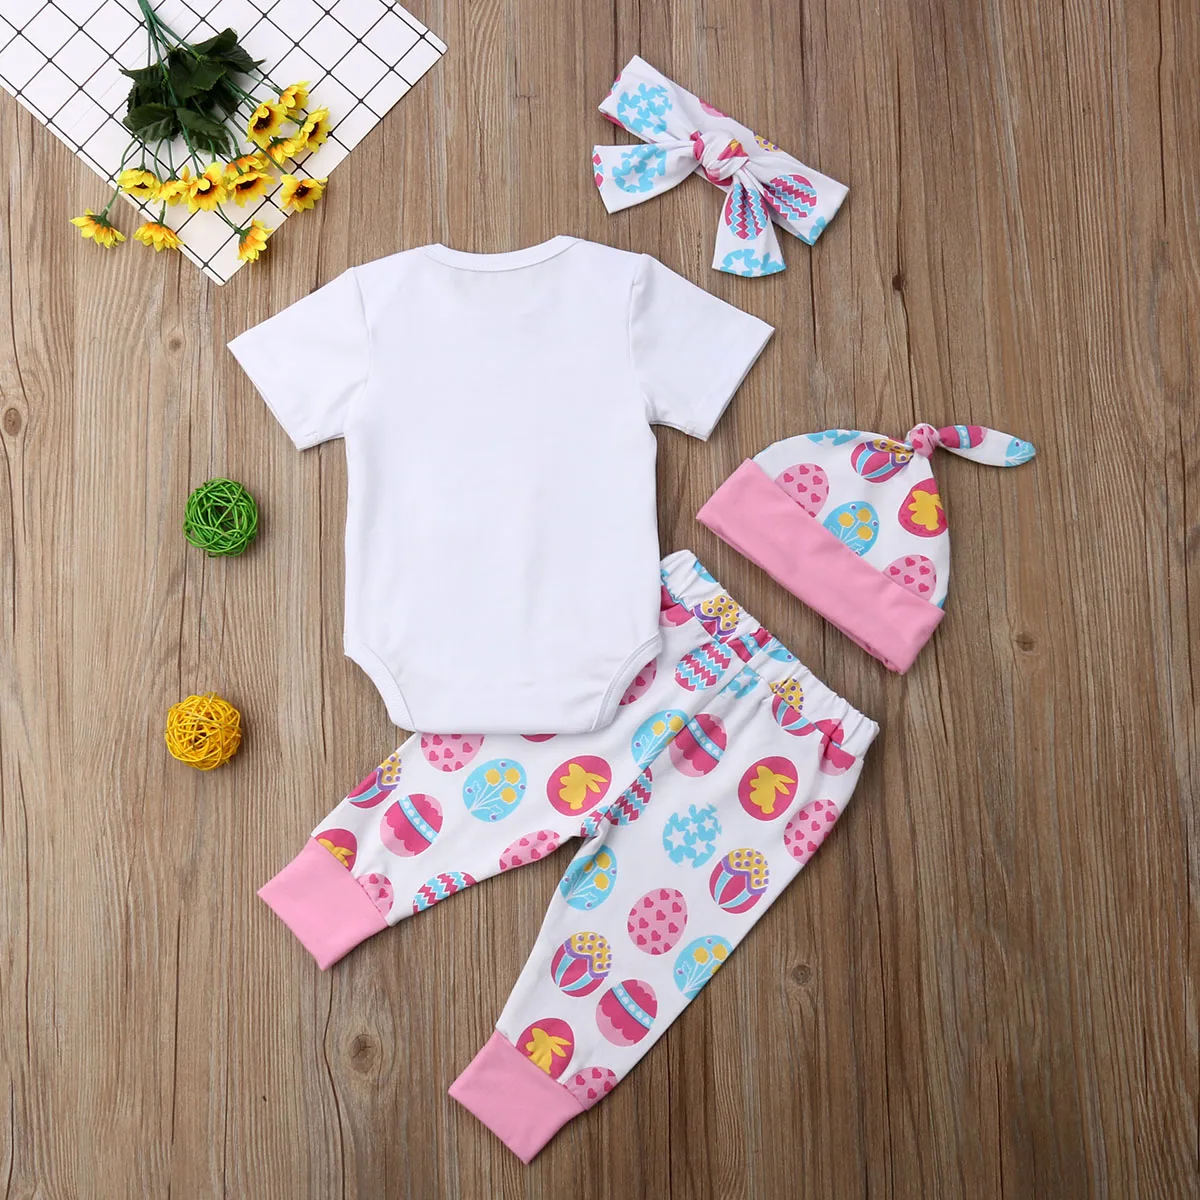 Новинка 2019 комплекты одежды для новорожденных мальчиков и девочек My 1st Easter